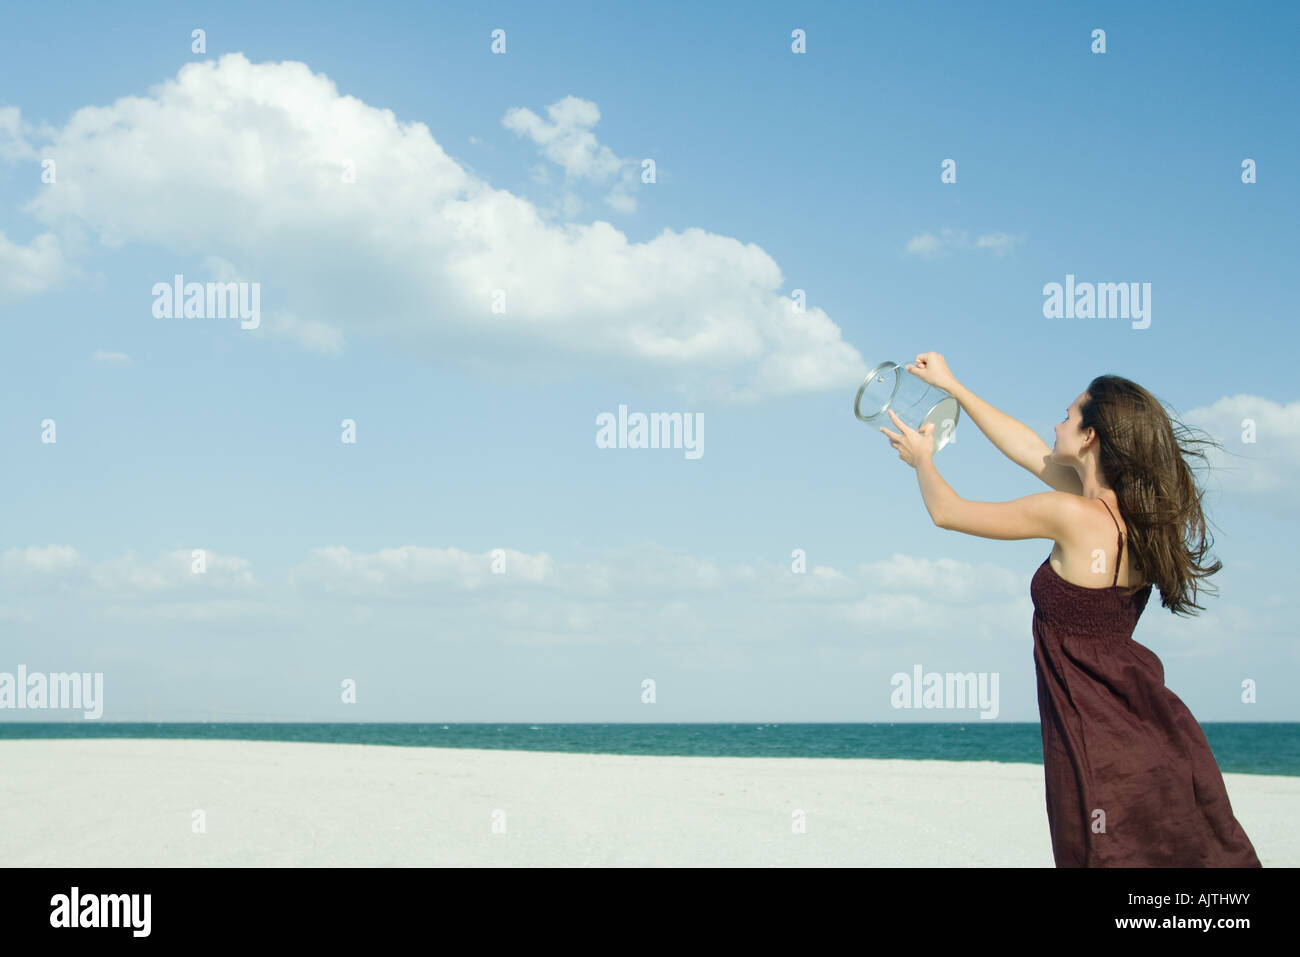 Woman standing on beach, holding up contenant transparent, libérant des nuages, illusion optique Banque D'Images